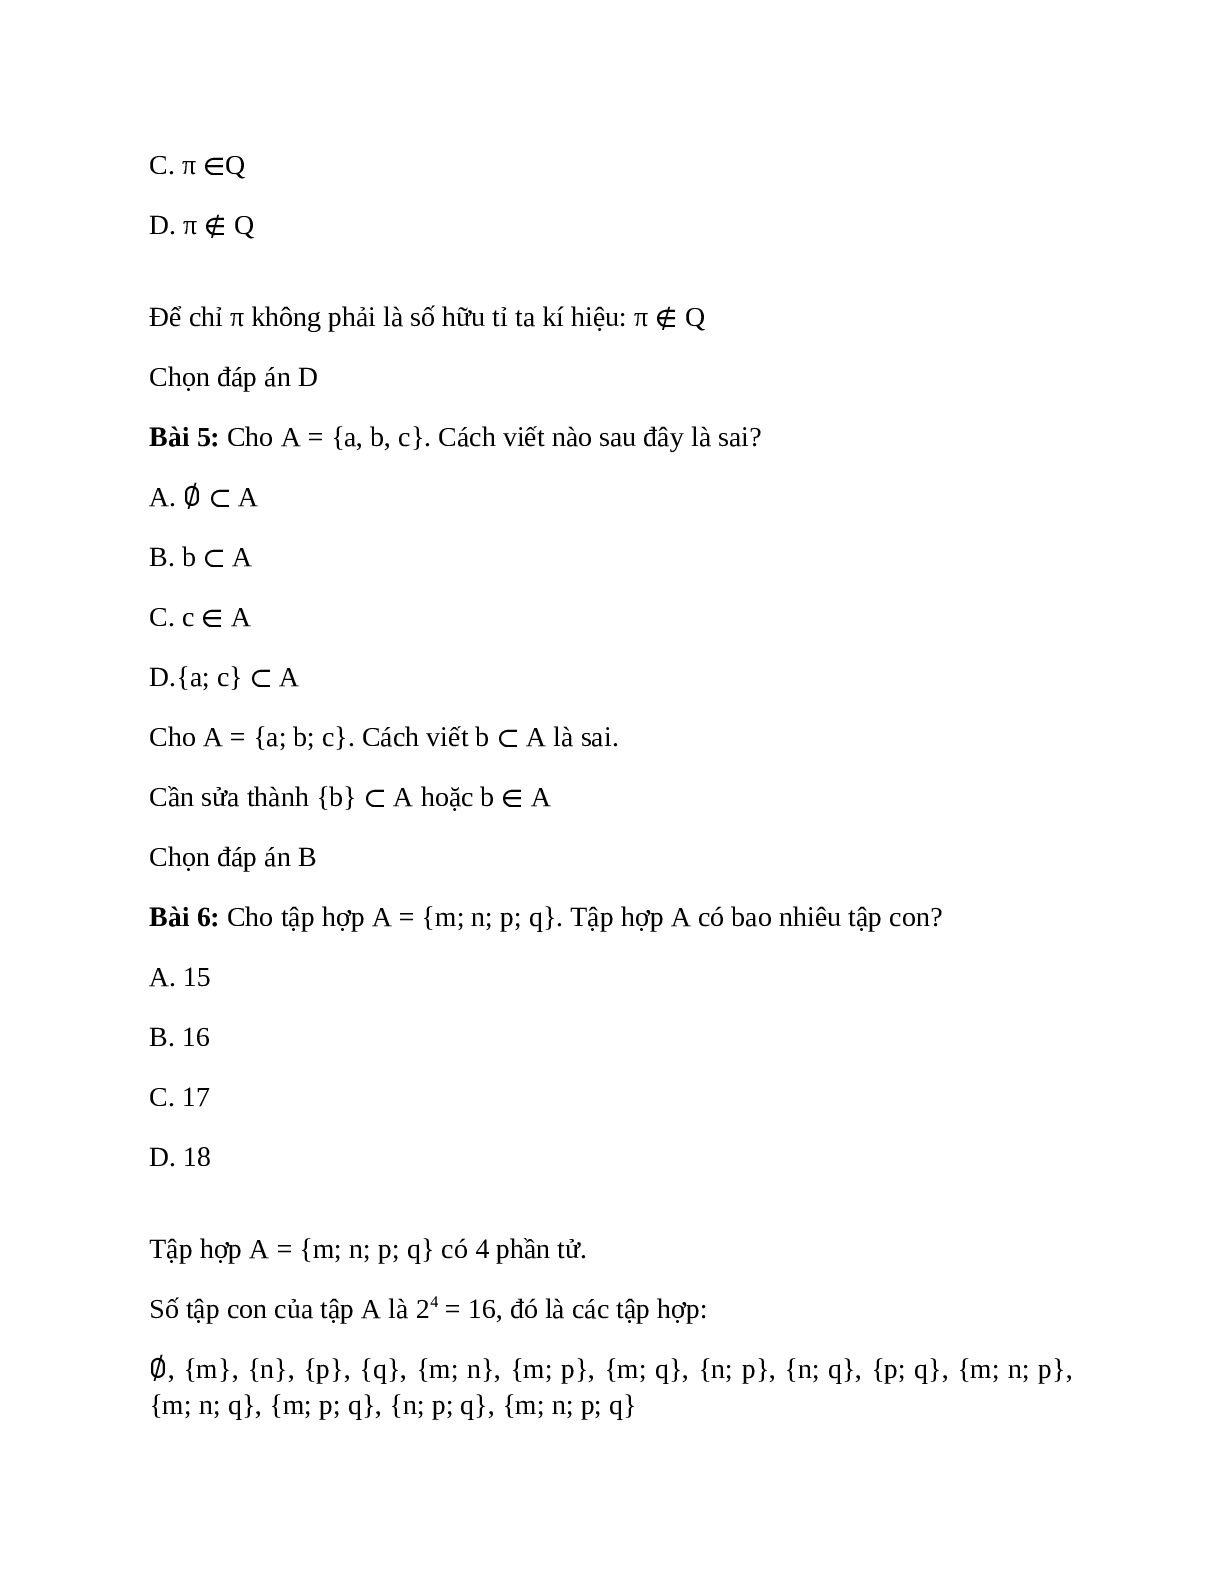 Trắc nghiệm Tập hợp có đáp án – Toán lớp 10 (trang 3)